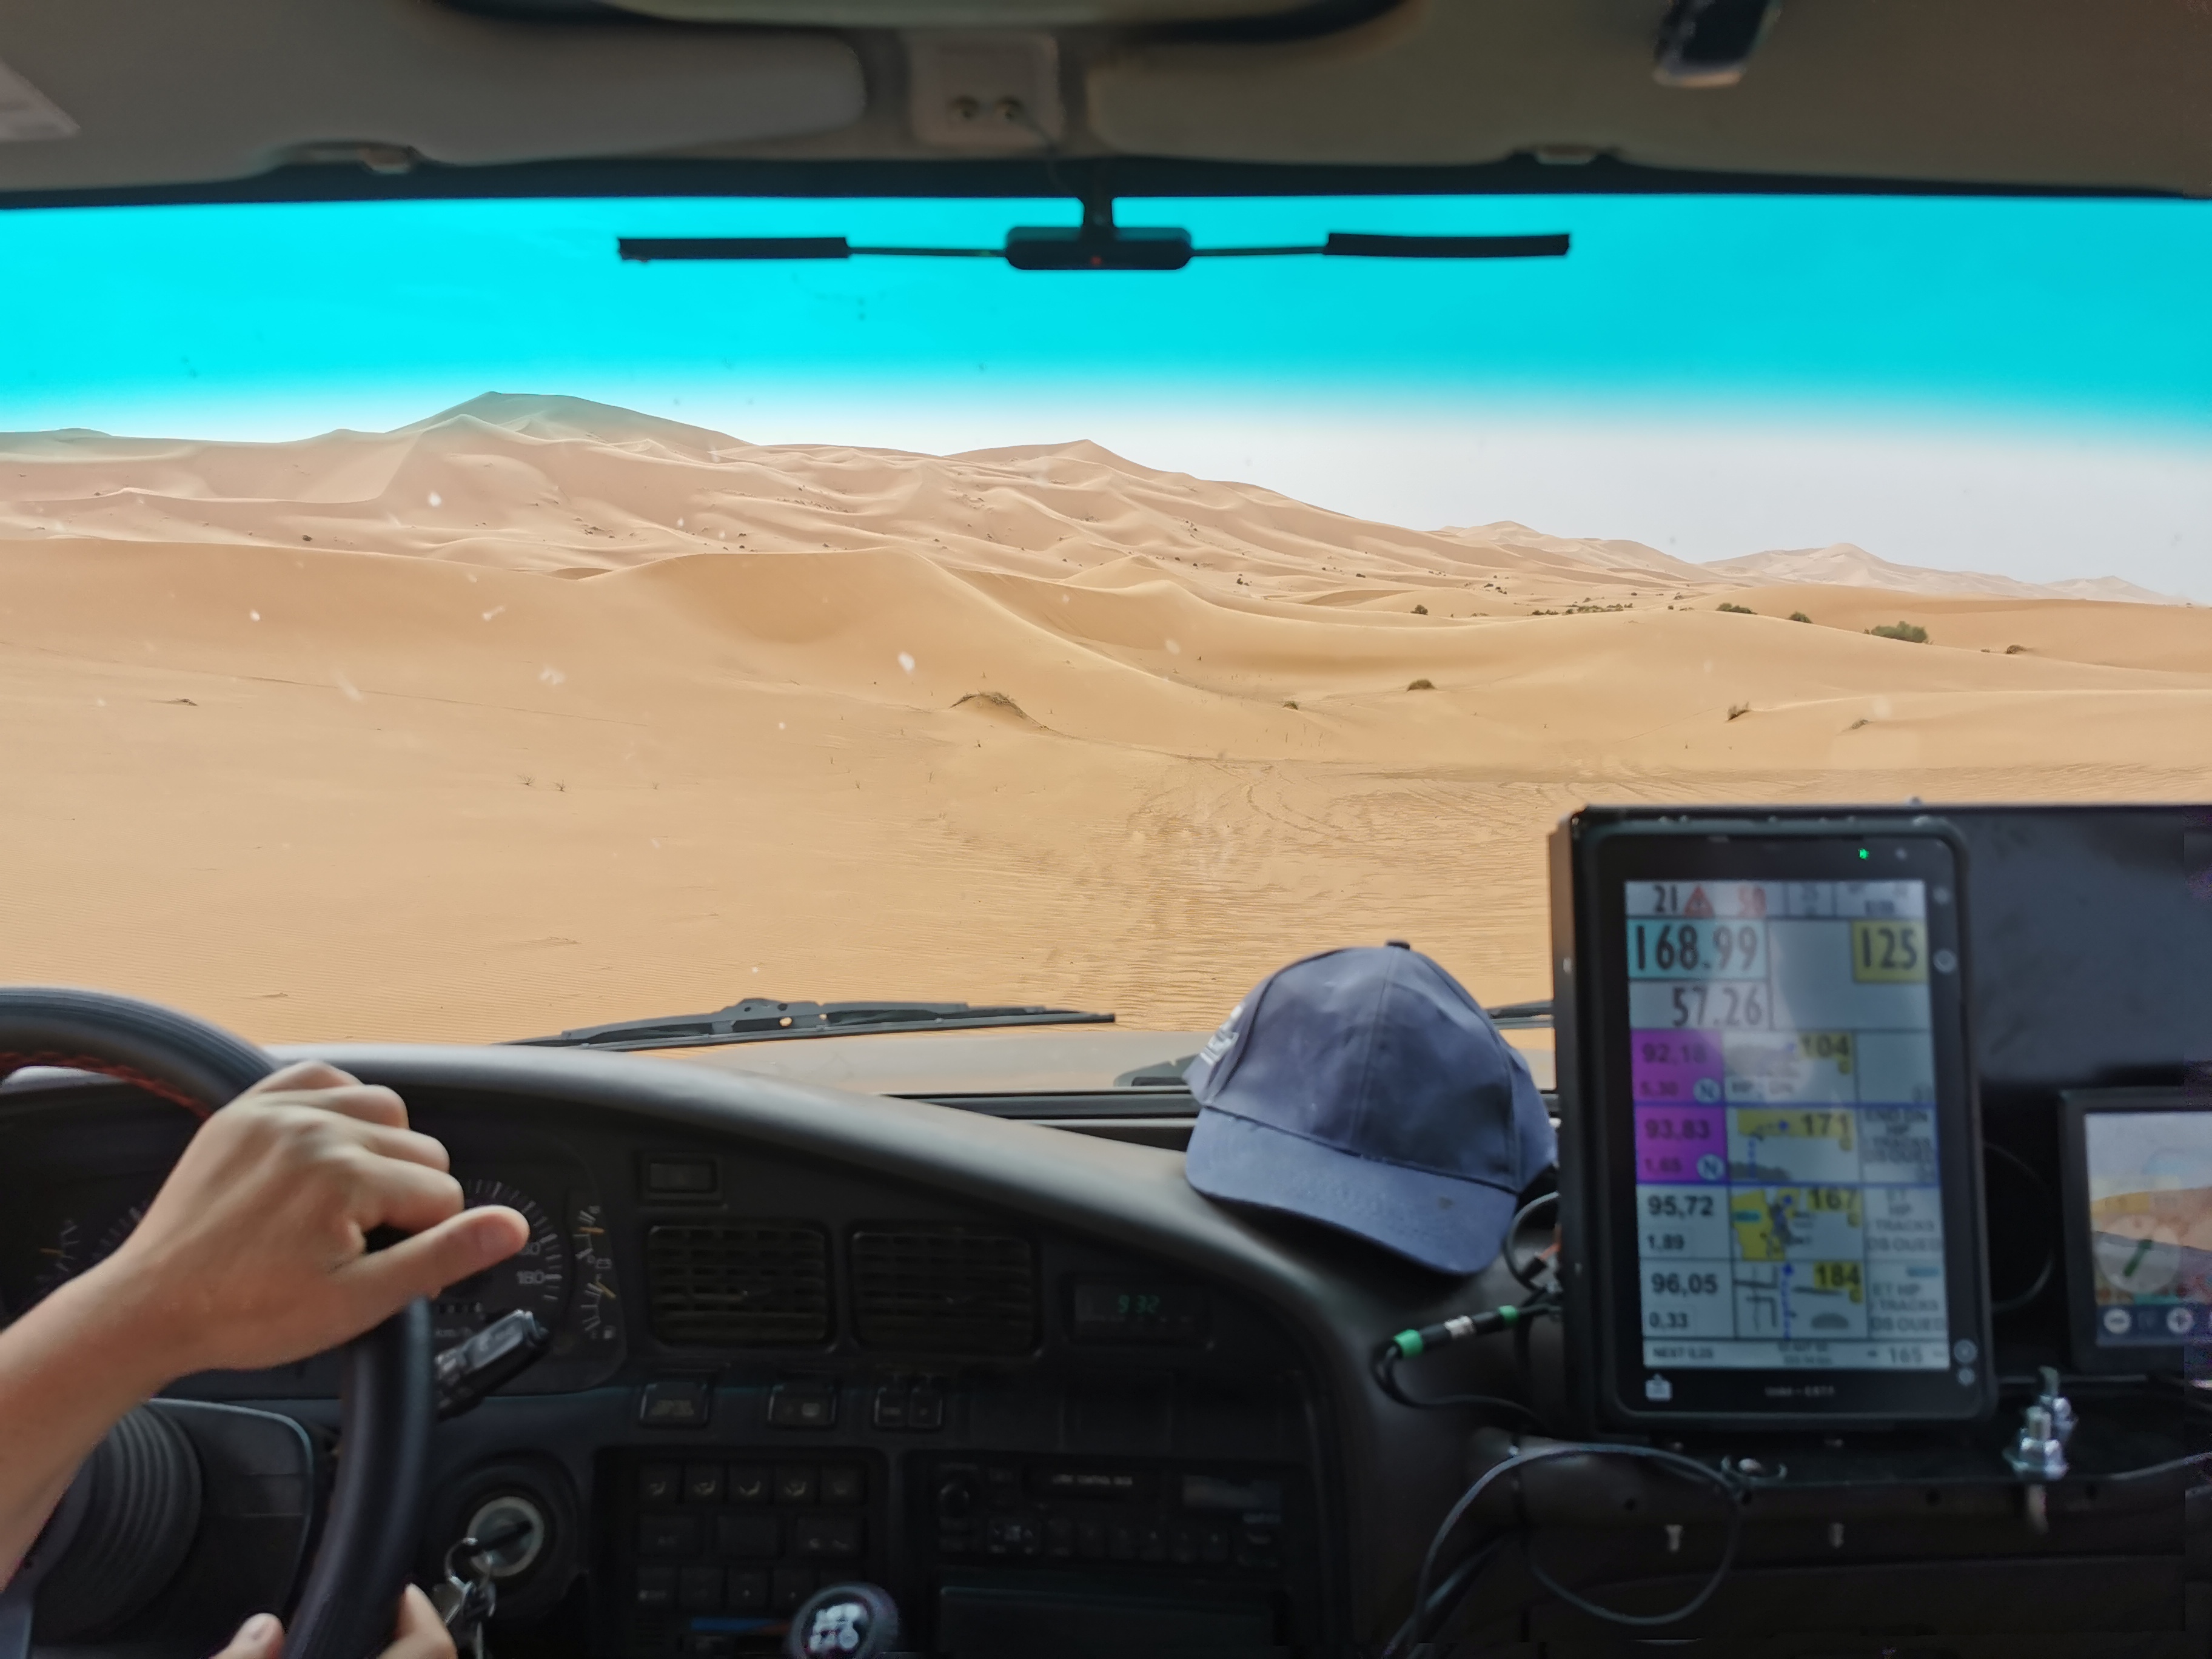 Franchissements des dunes de Merzouga au cap selon les indications de la tablette